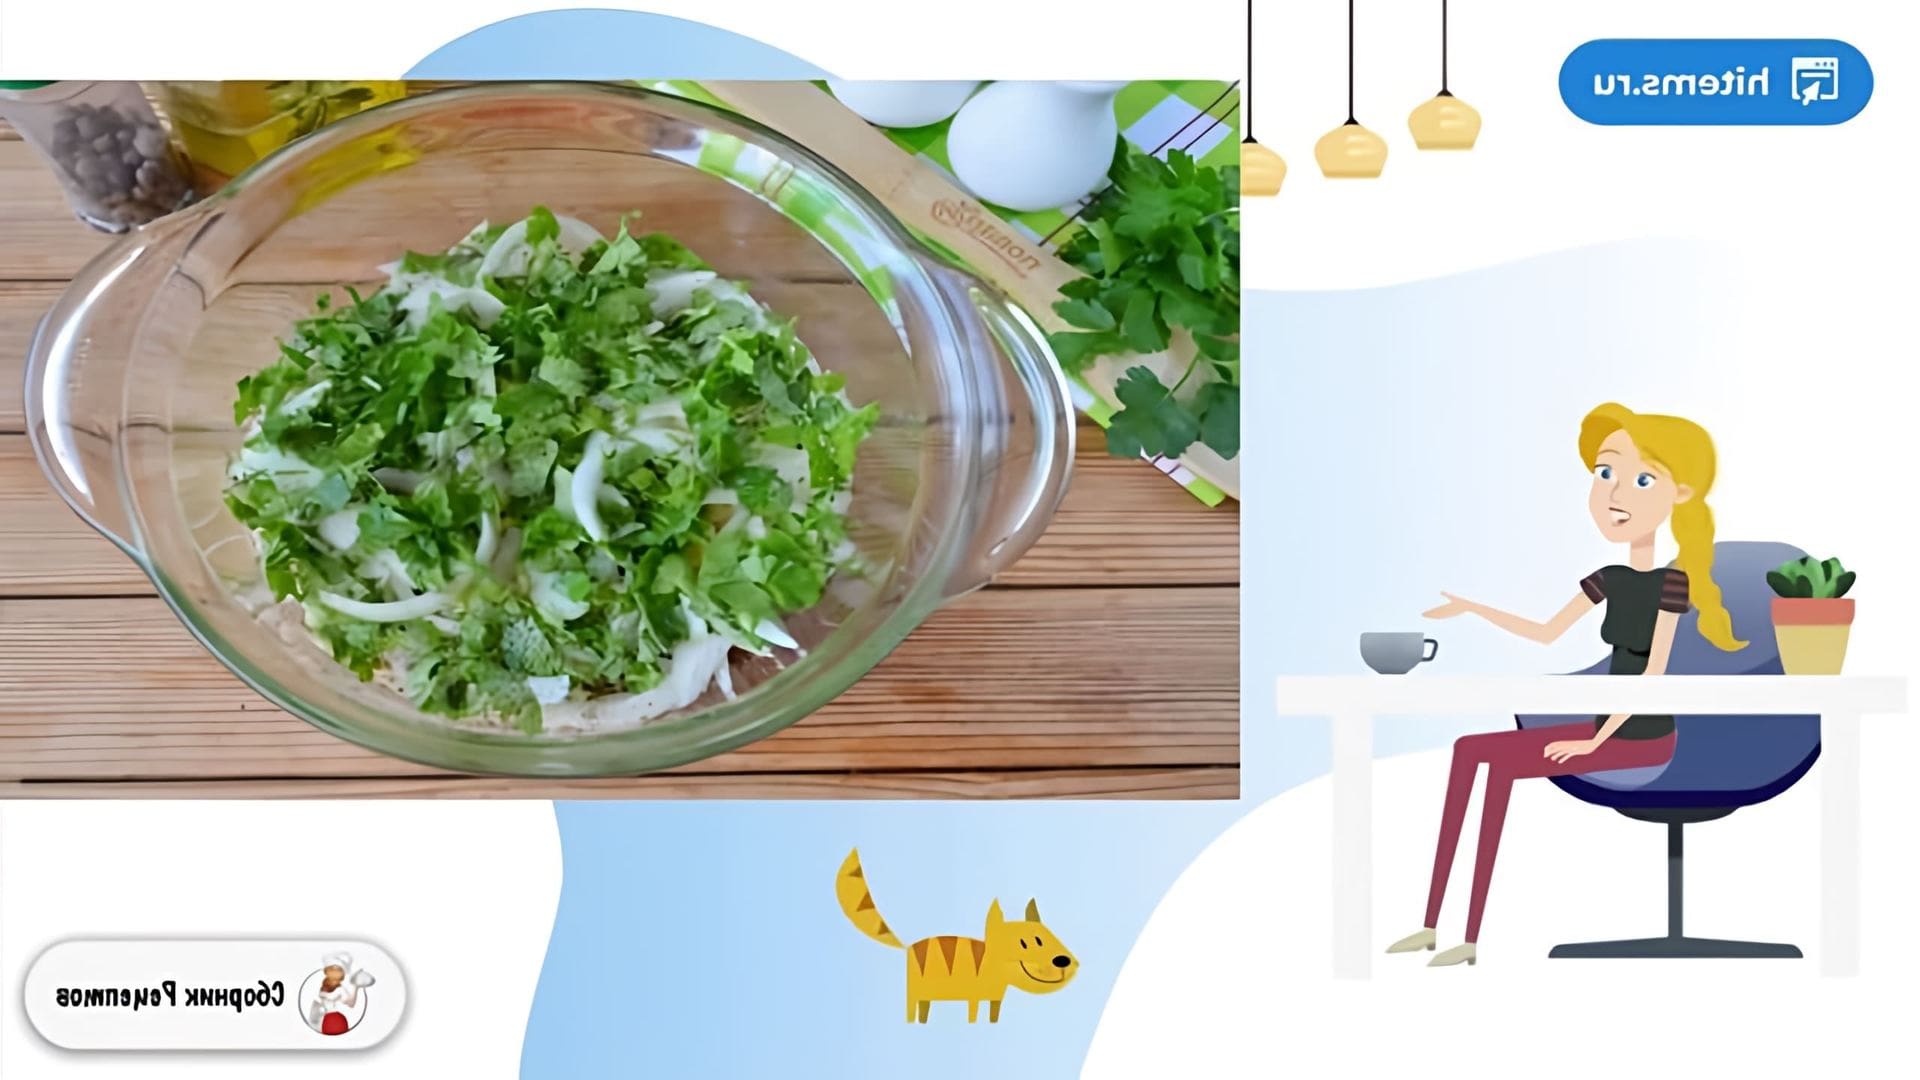 В этом видео демонстрируется рецепт приготовления запеканки из готовой гречневой каши